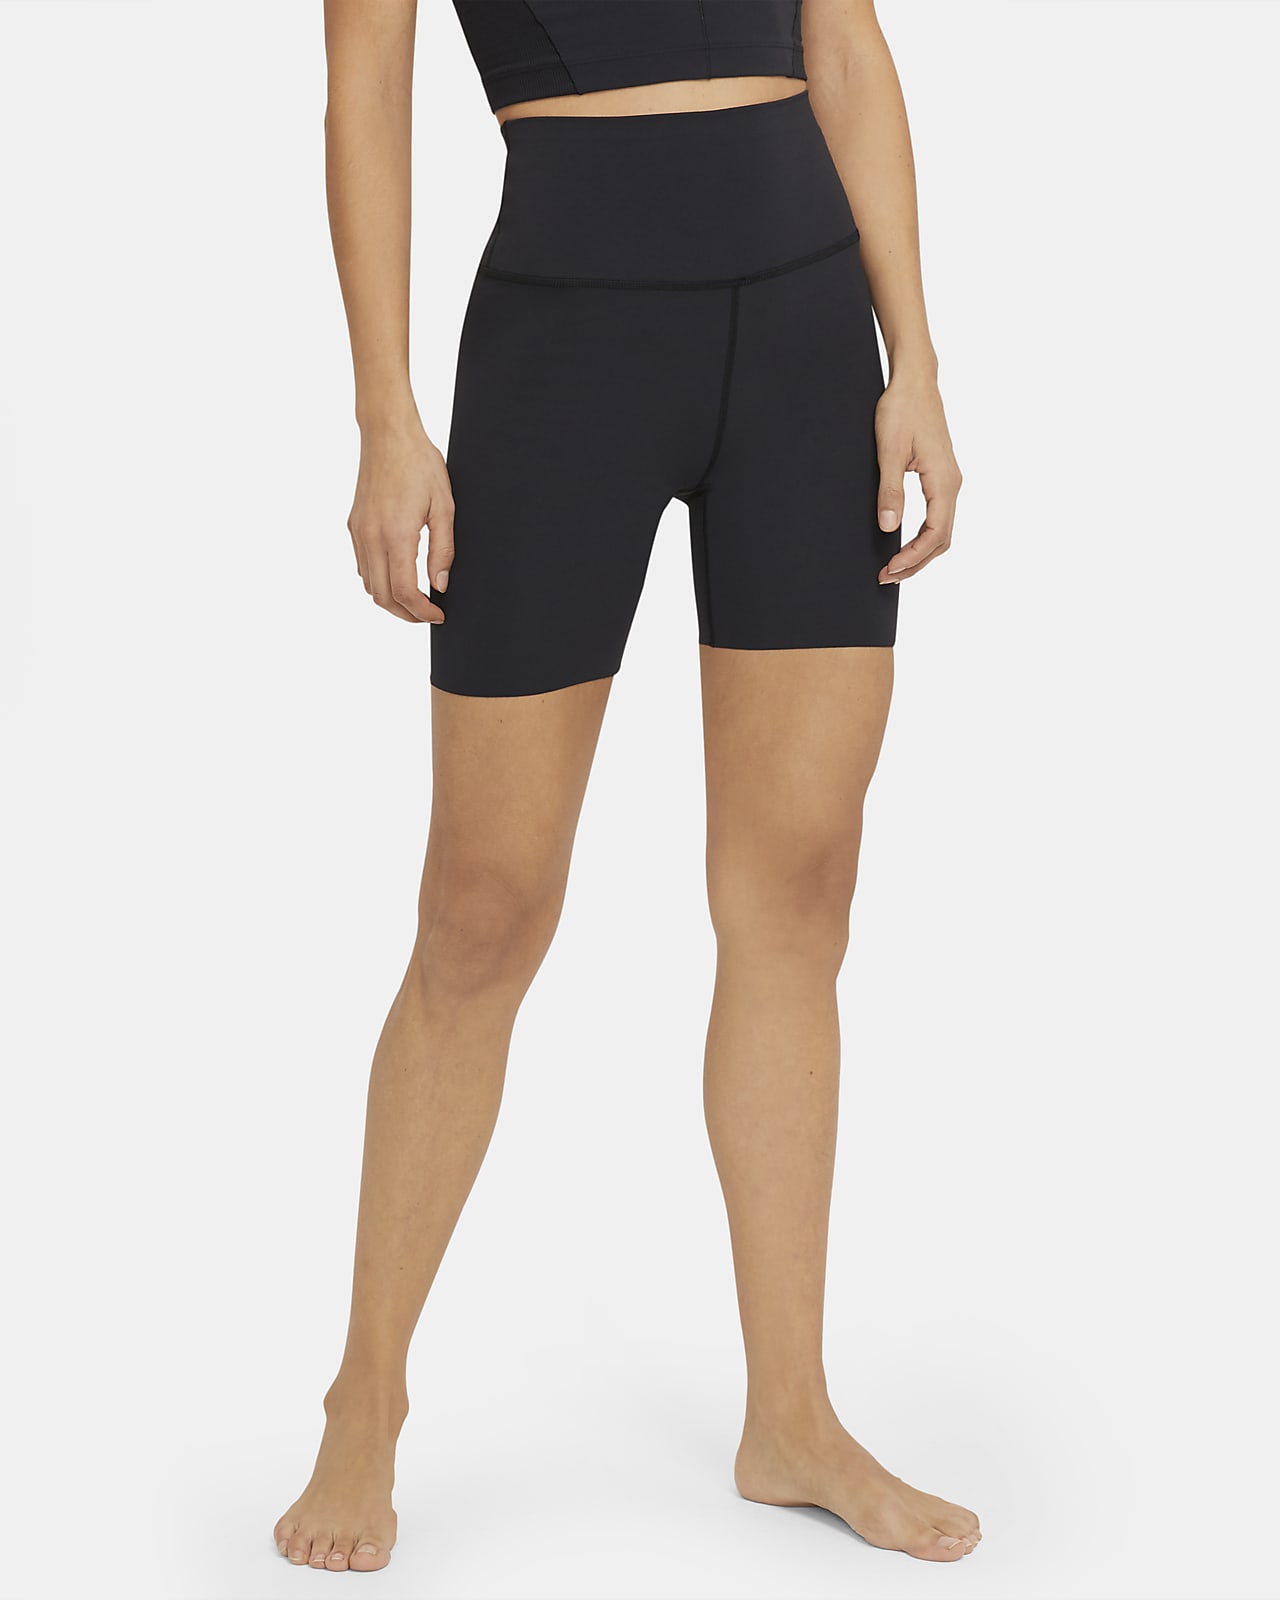 Shorts de cintura alta para mujer Nike Yoga Luxe